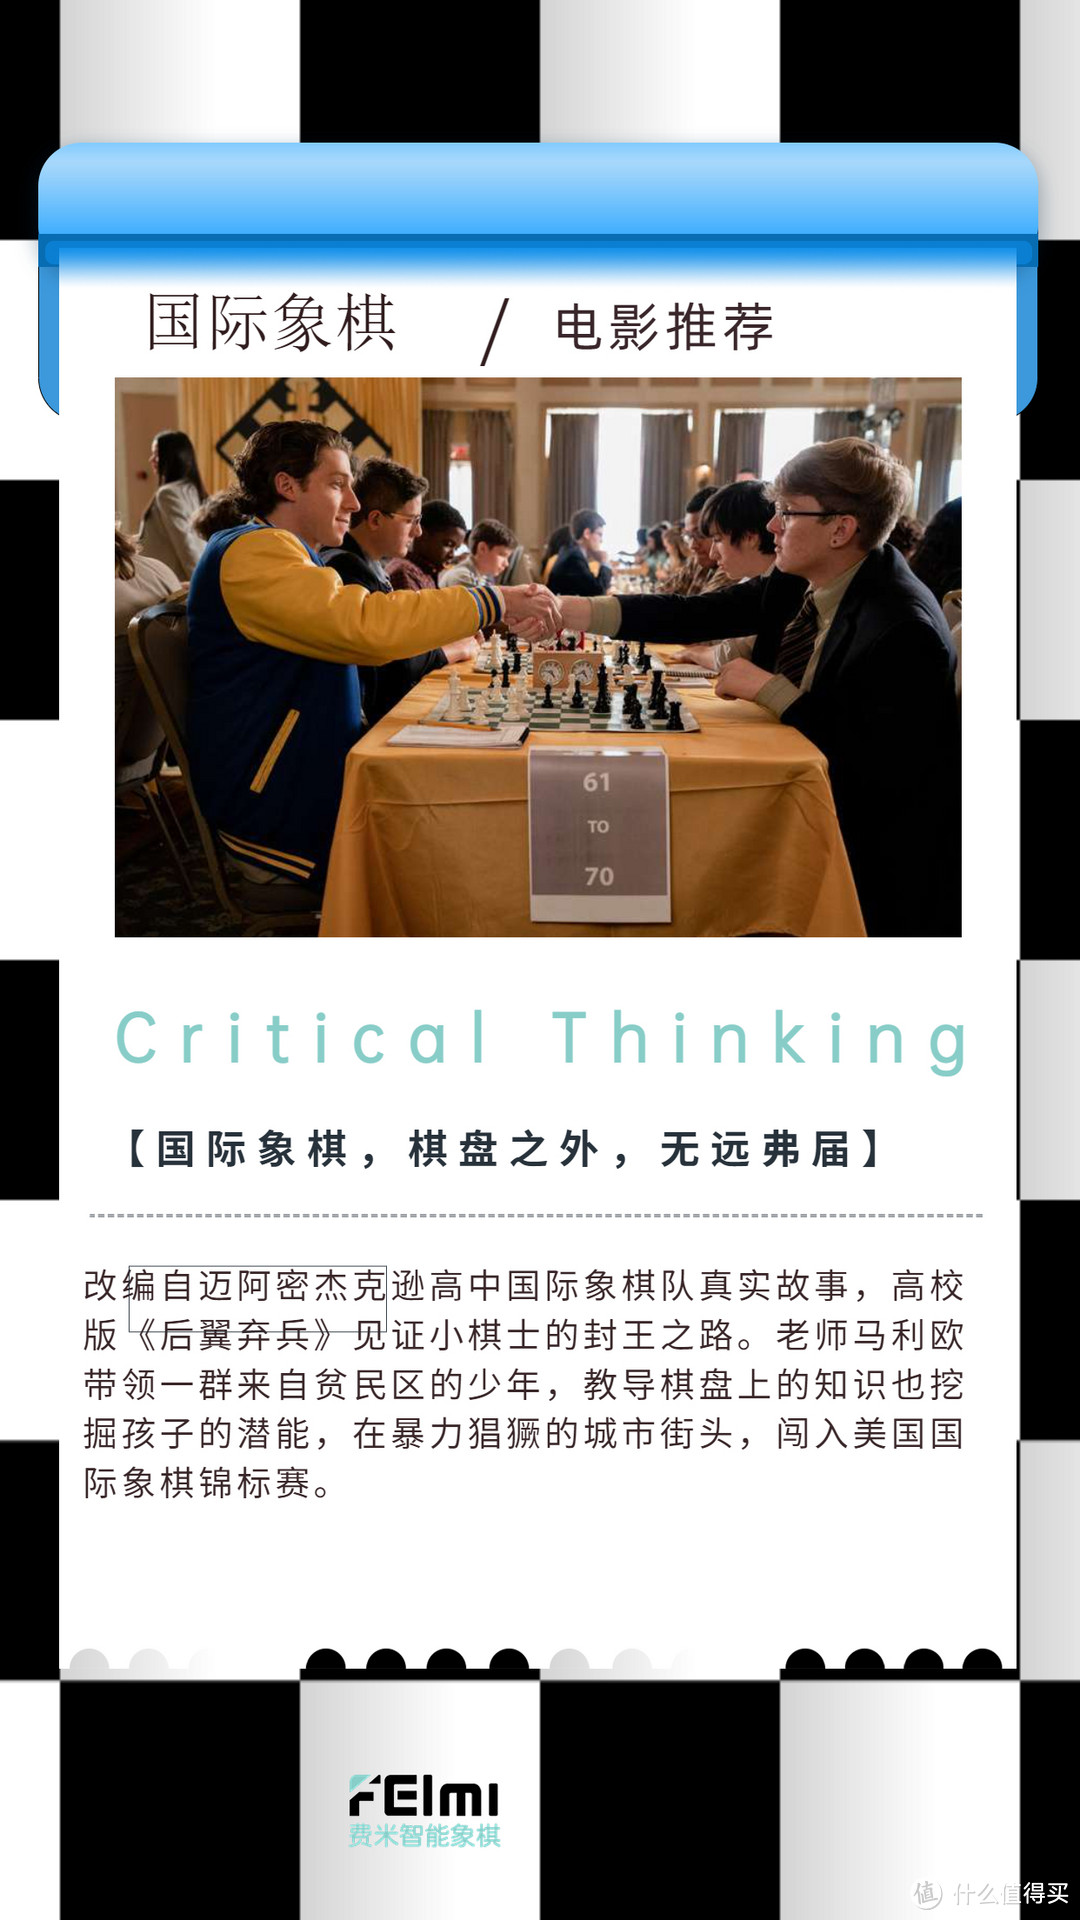 8部“国际象棋”相关电影，励志/成长/教育主题